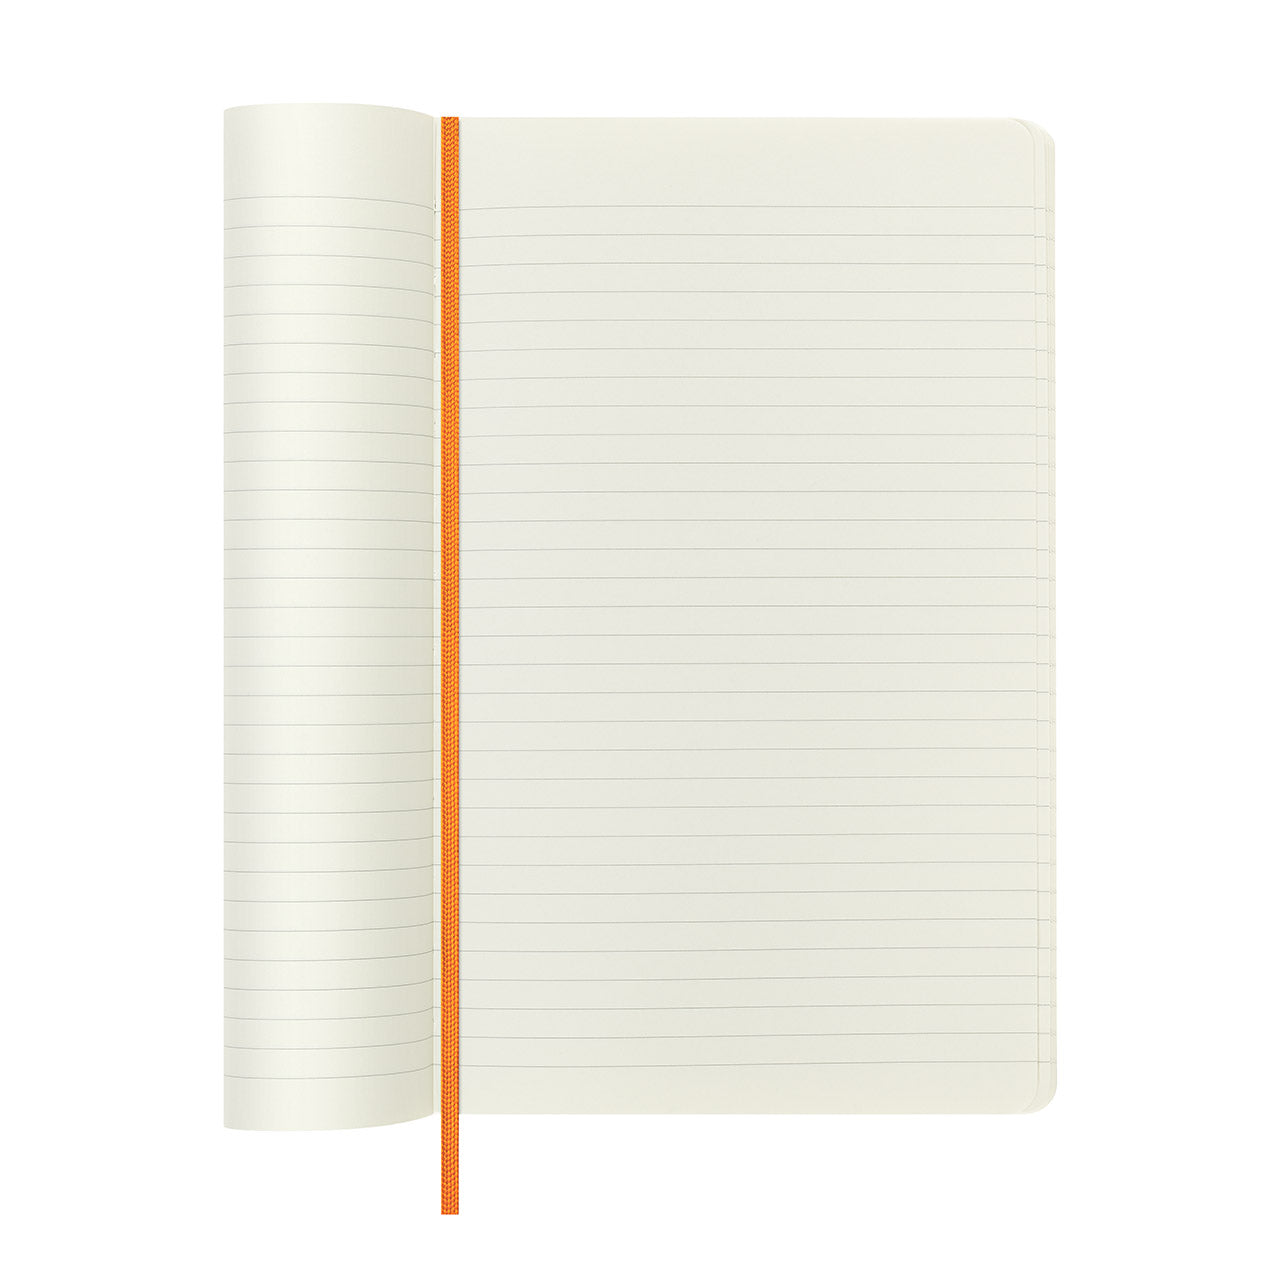 Precious & Ethical Capri Soft Cover Notebook Large Orange